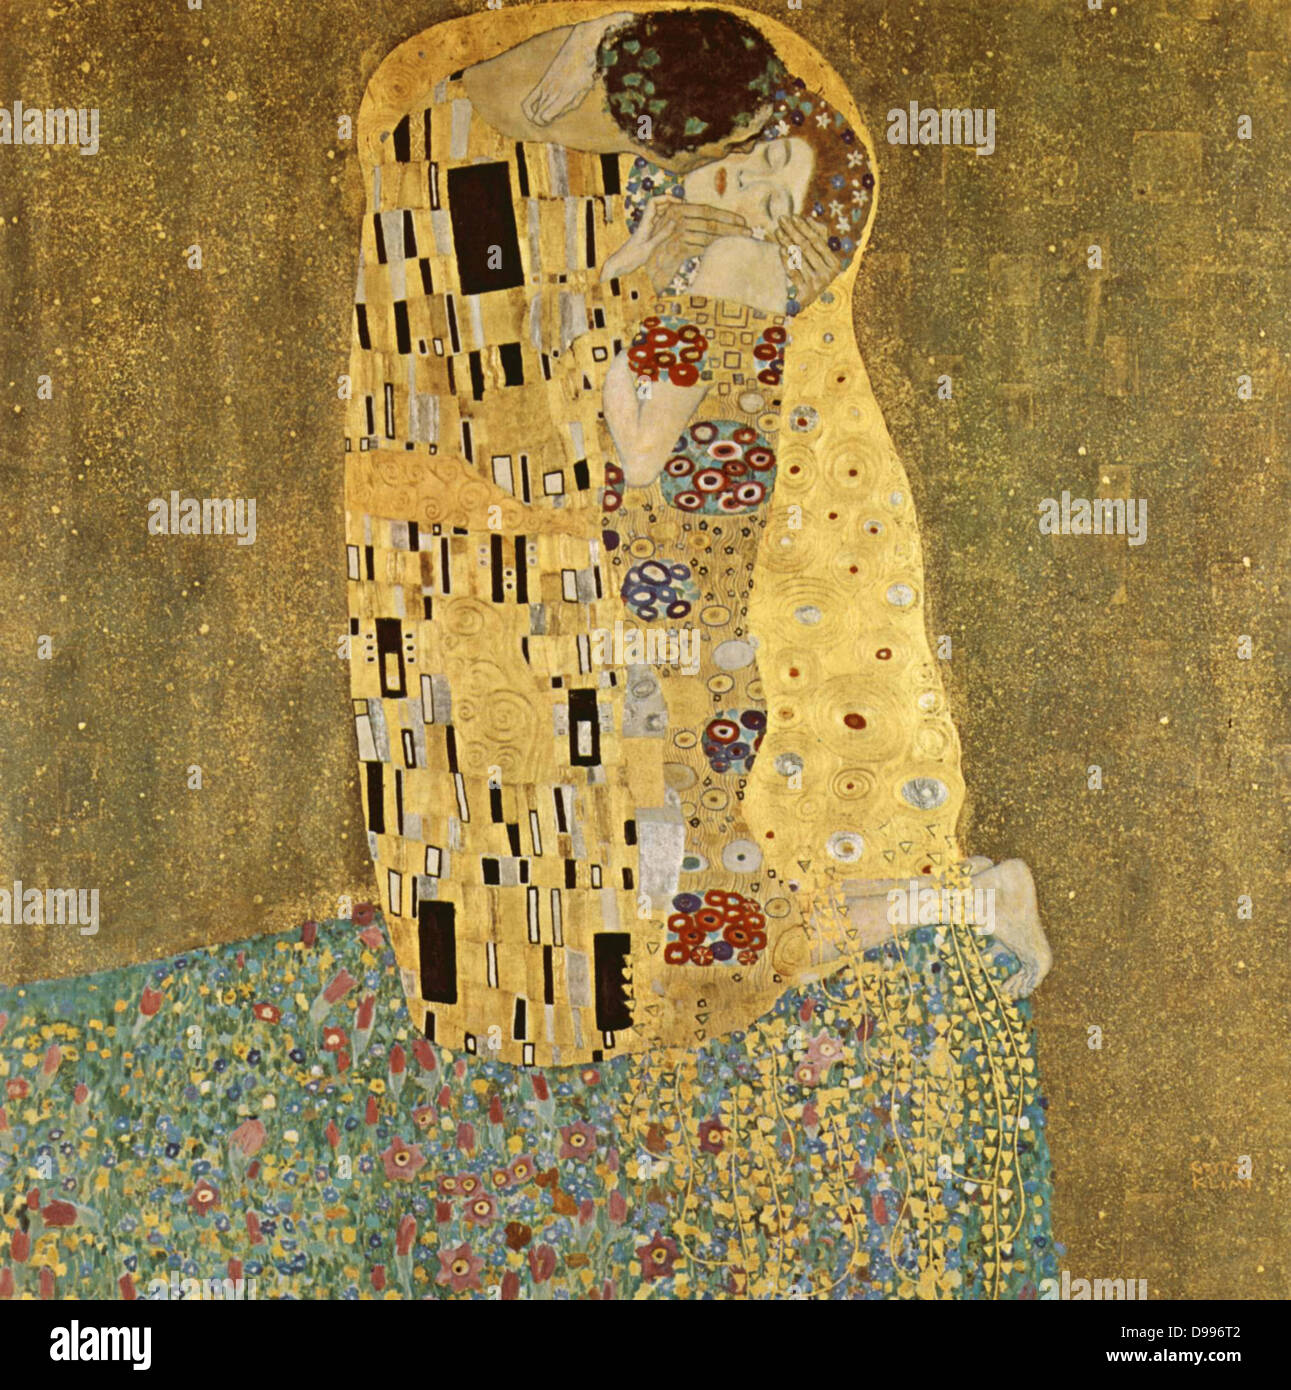 Gustav Klimt 1862 - 1918. "El Kis' fue pintado por Gustav Klimt, y probablemente es su obra más famosa. Comenzó a trabajar en 1907 y es el punto culminante de su llamado "Período de Oro". Muestra una pareja, en distintas tonalidades de oro y símbolos, compartiendo un beso contra un fondo de bronce. Foto de stock